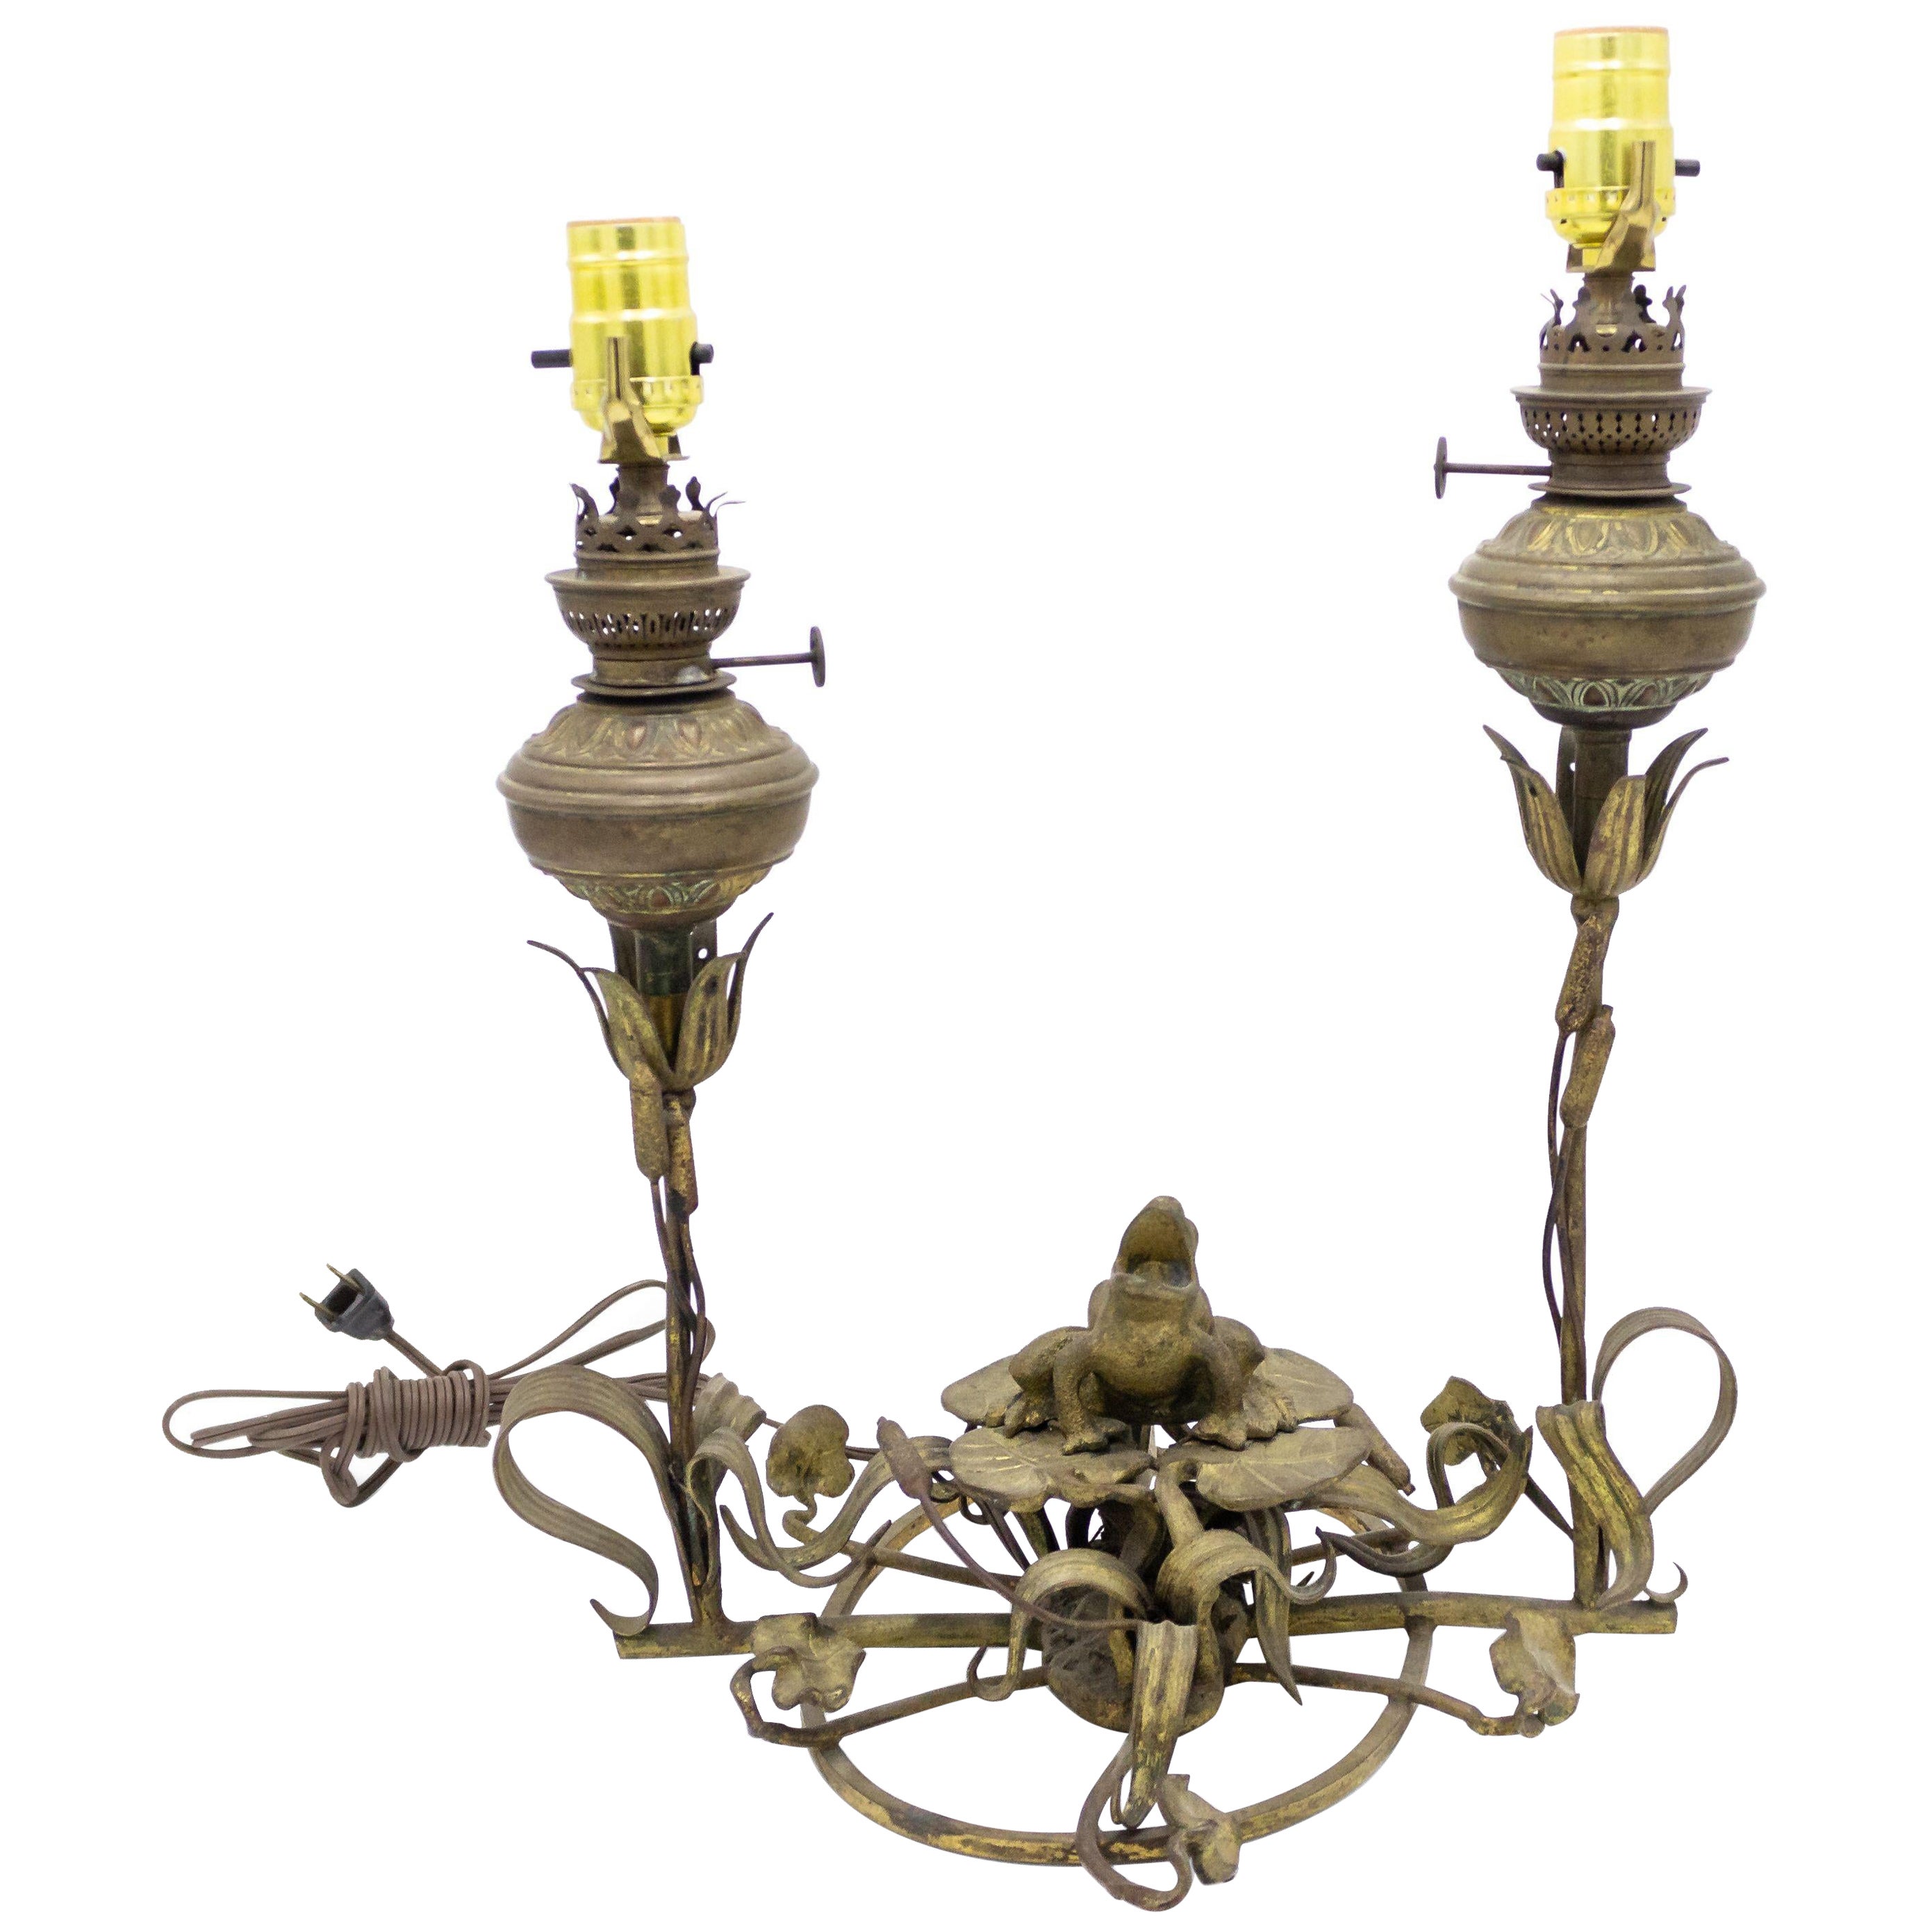 Englische viktorianische Frosch-Tischlampe aus Bronze des späten 19. Jahrhunderts